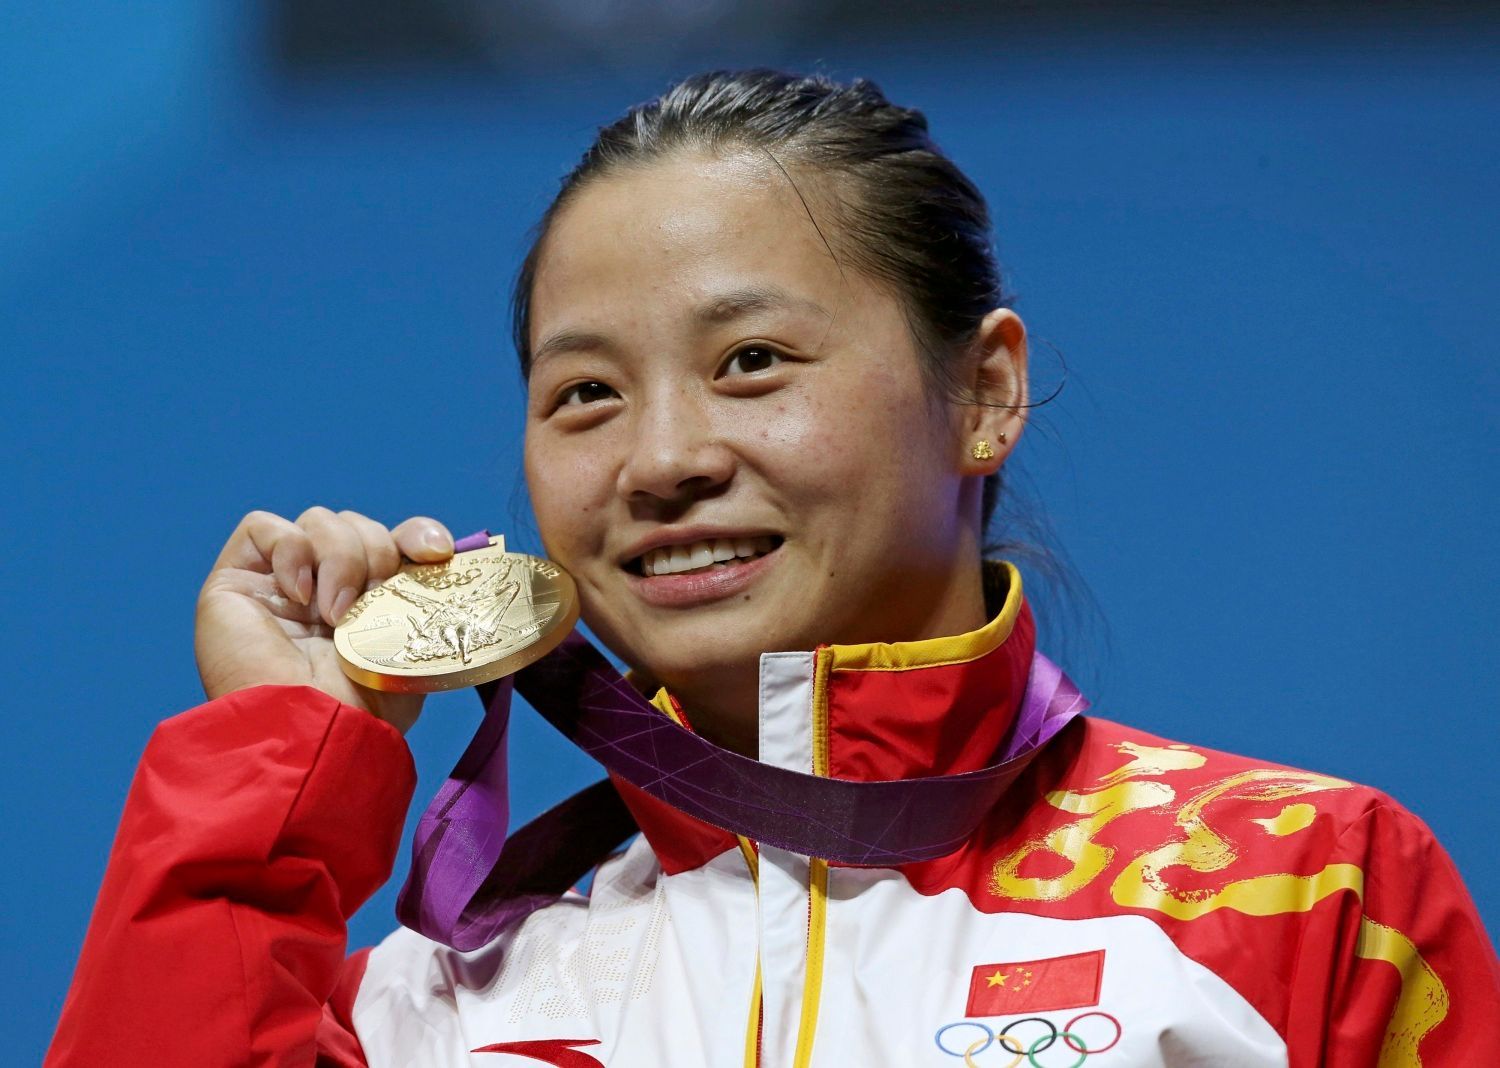 Čínská vzpěračka LI Xueying pózuje se zlatou medailí v kategorii žen do 58 kg na OH 2012 v Londýně.